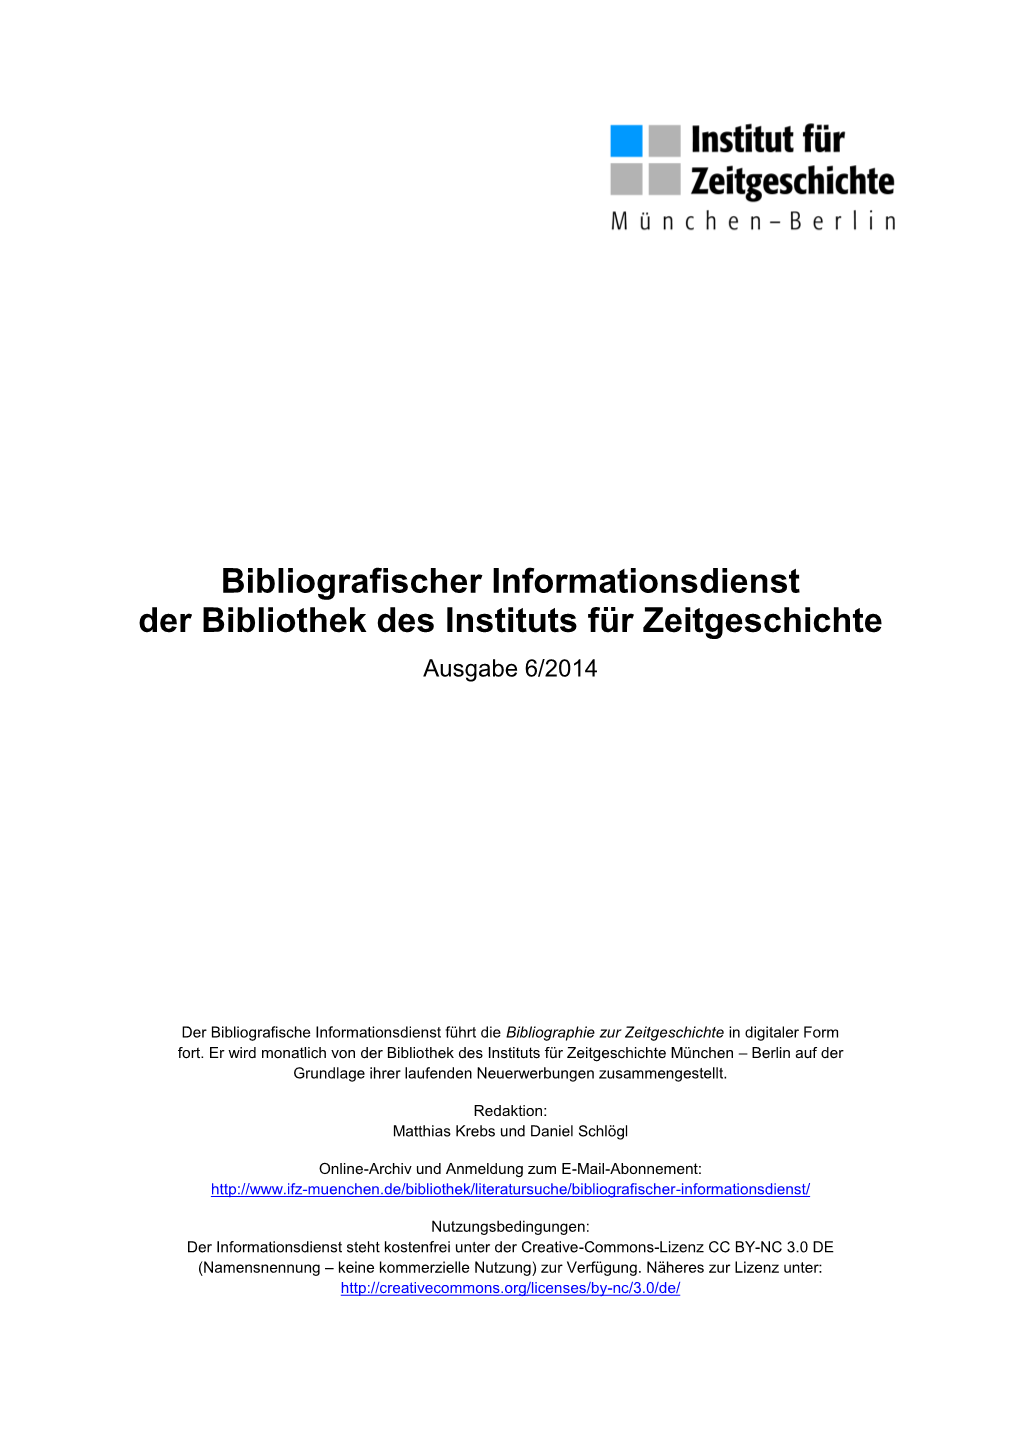 Bibliografischer Informationsdienst 06/2014